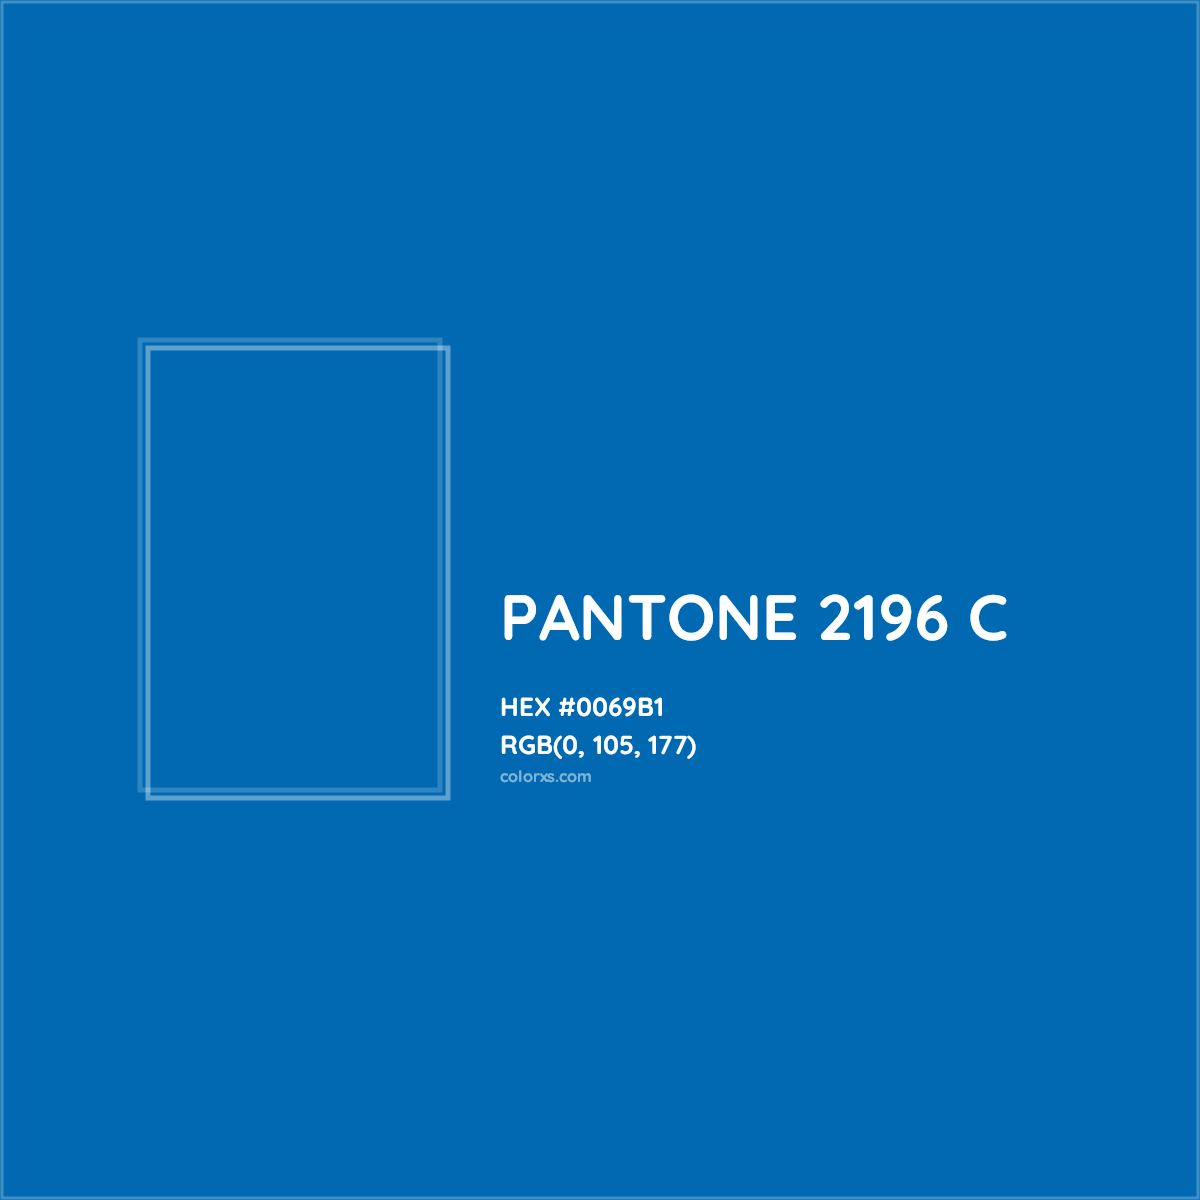 HEX #0069B1 PANTONE 2196 C CMS Pantone PMS - Color Code